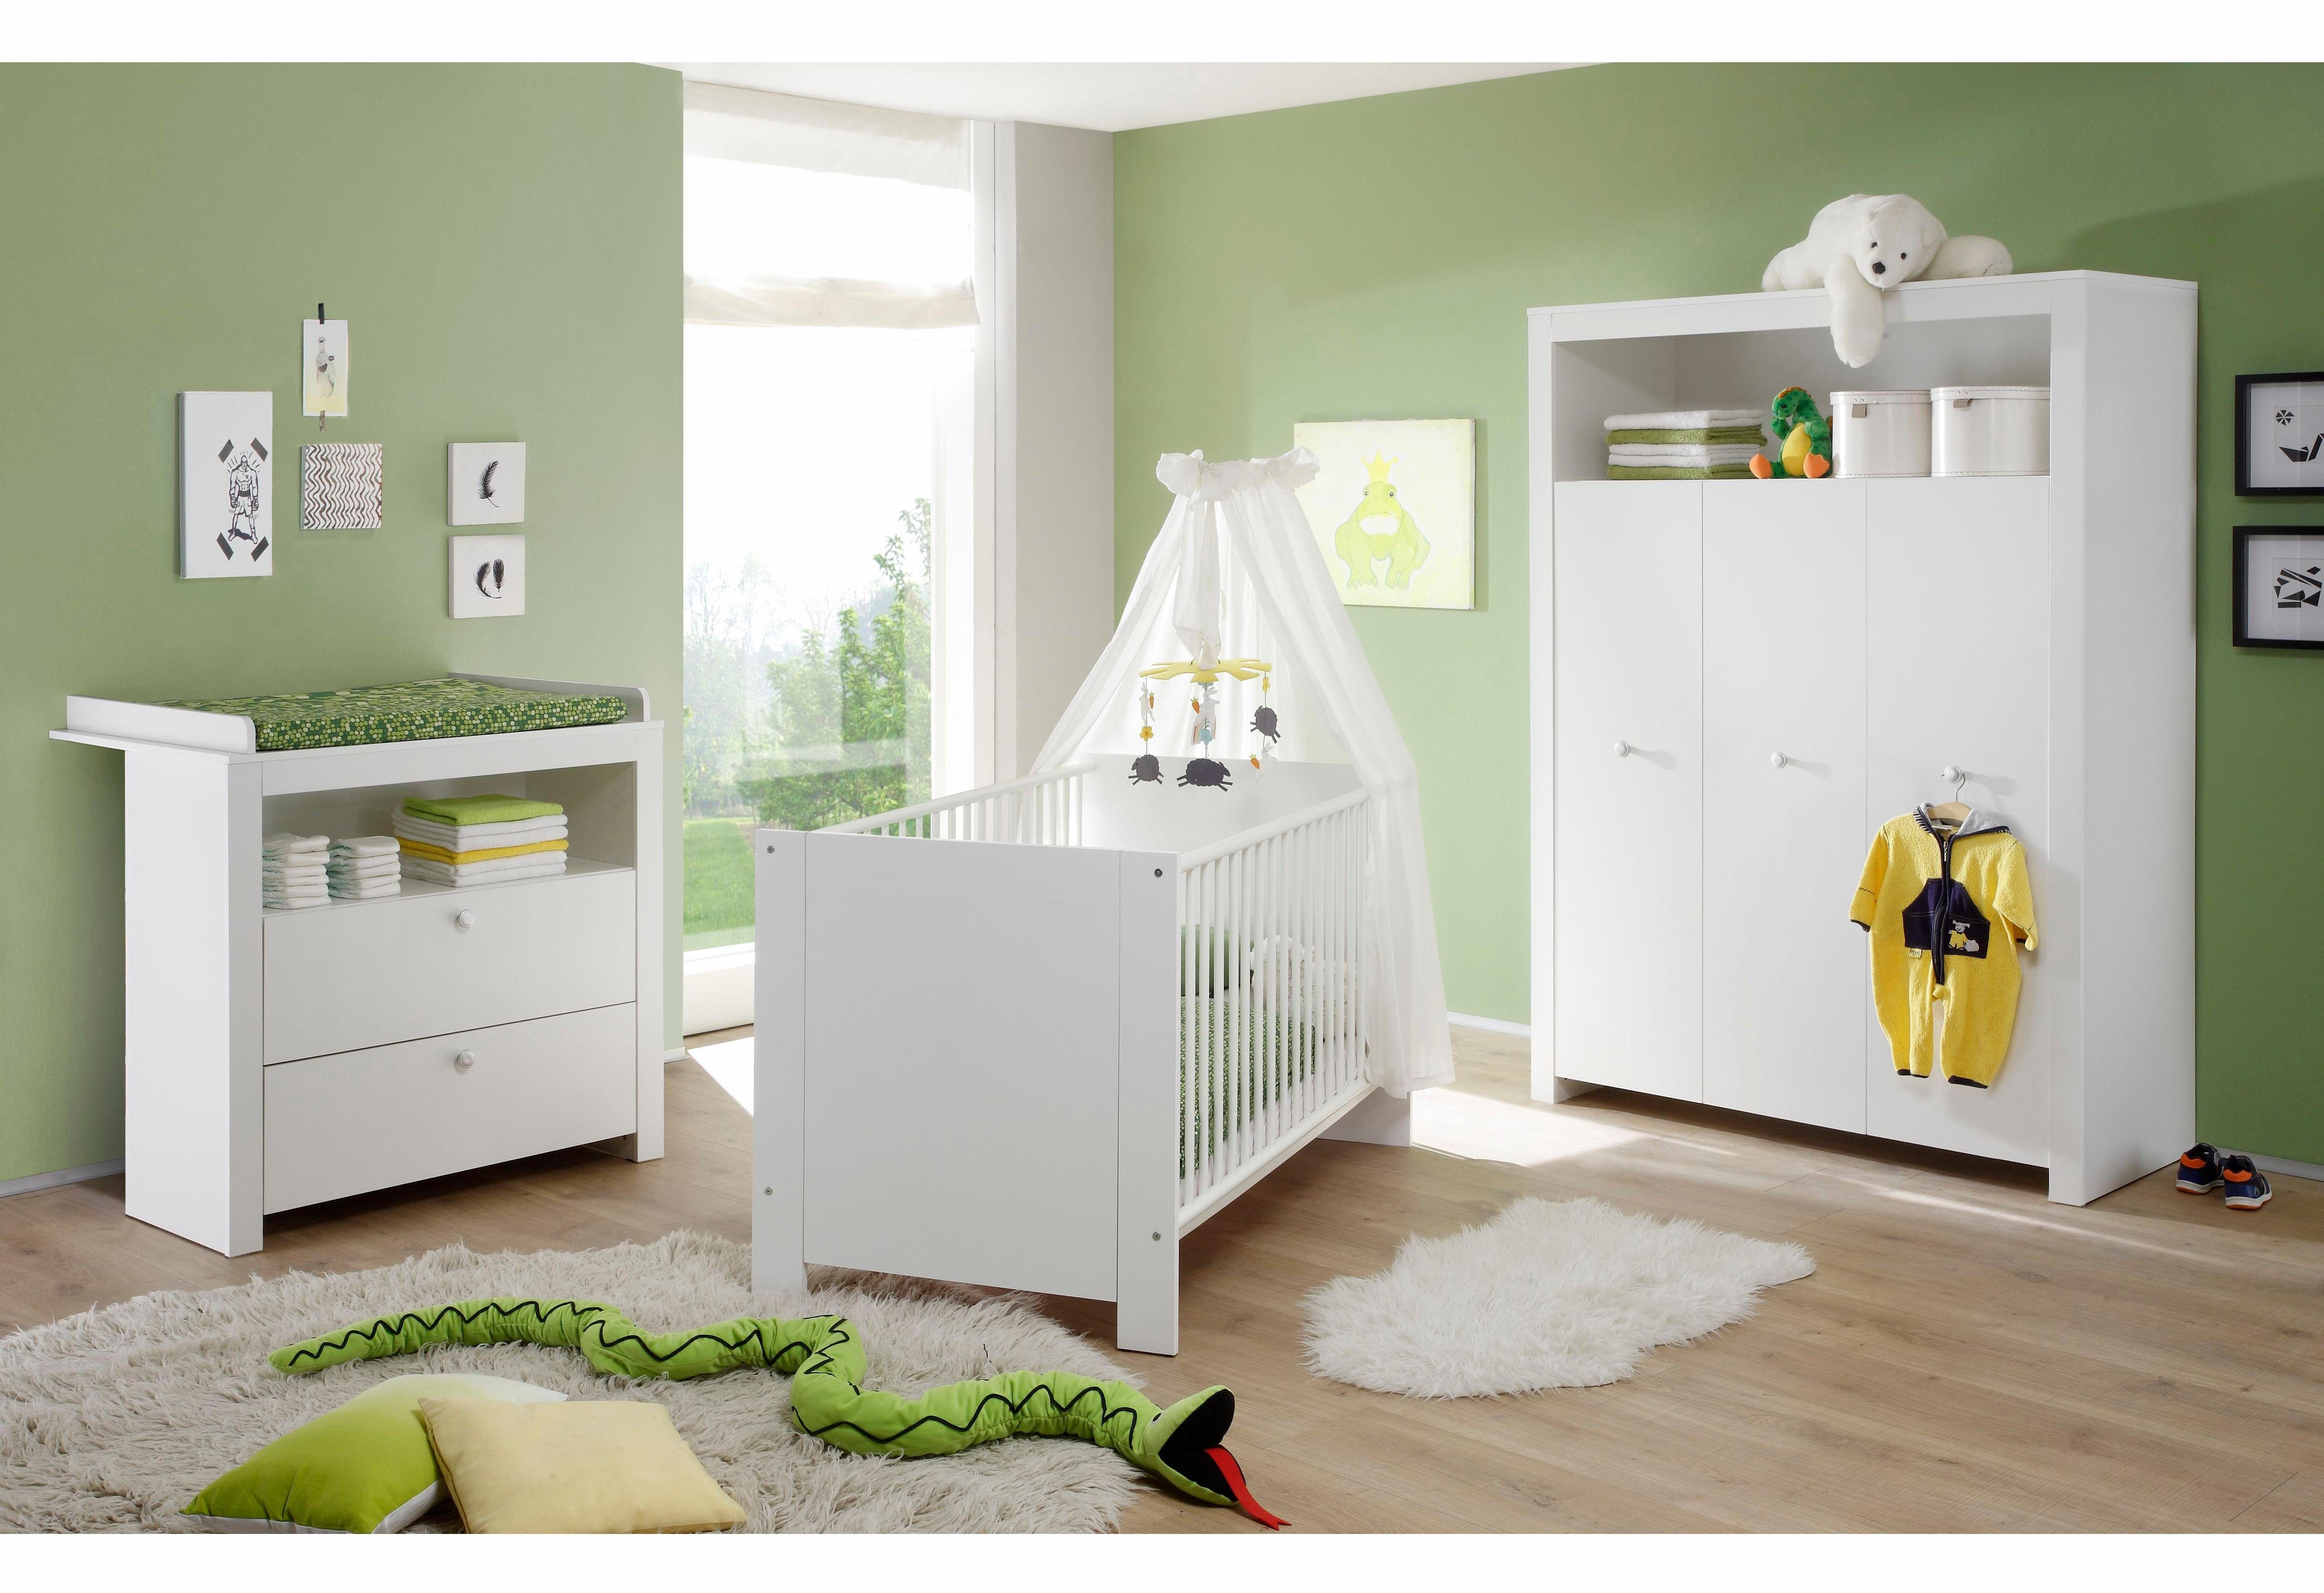 ambitie Verdampen twintig Complete babykamerset Trend Bed + commode + 3-deurs kast (set, 3 stuks)  snel online gekocht | OTTO